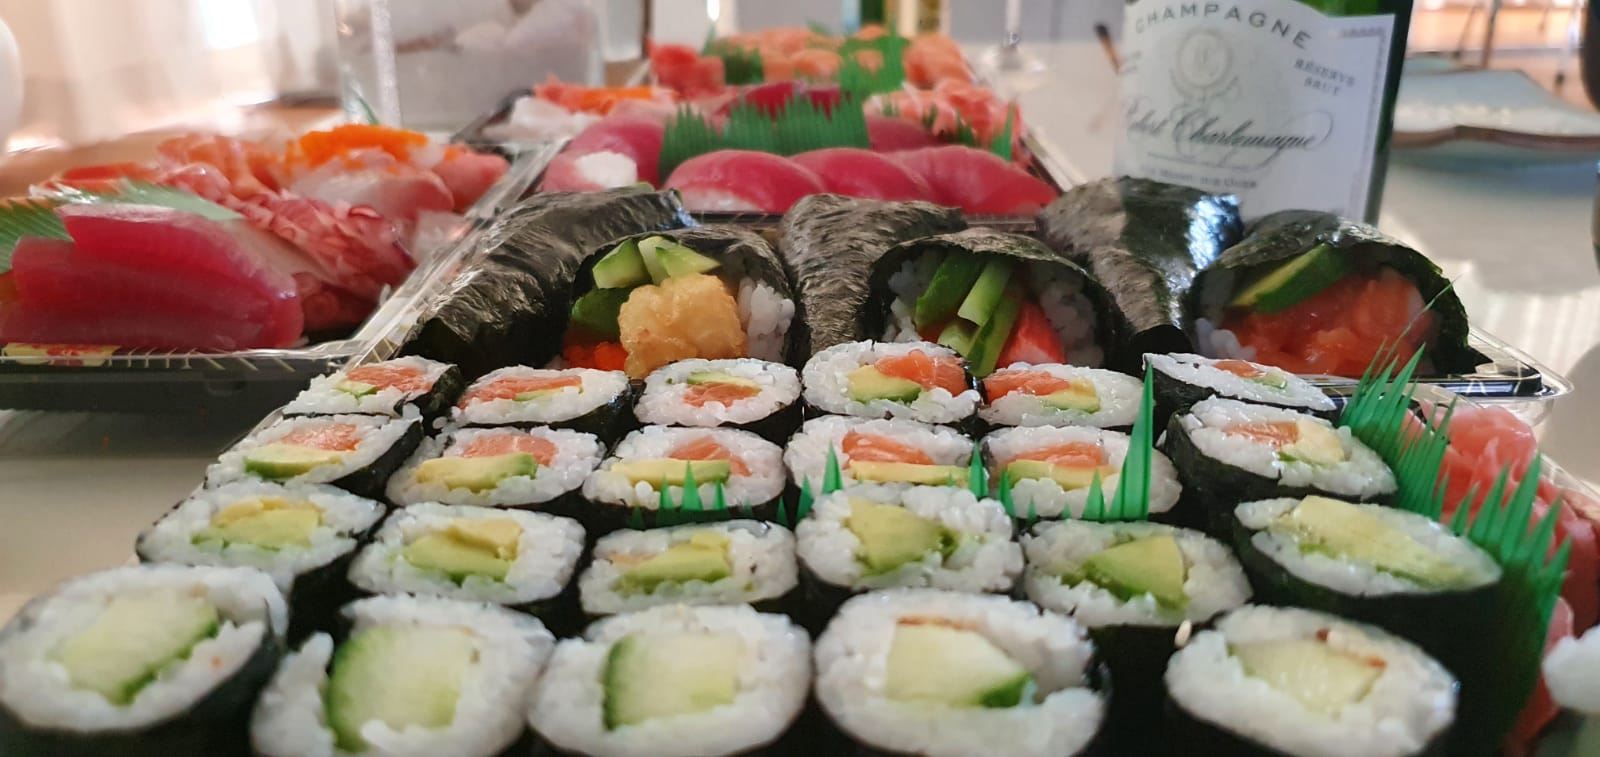 De beste sushi van Amsterdam